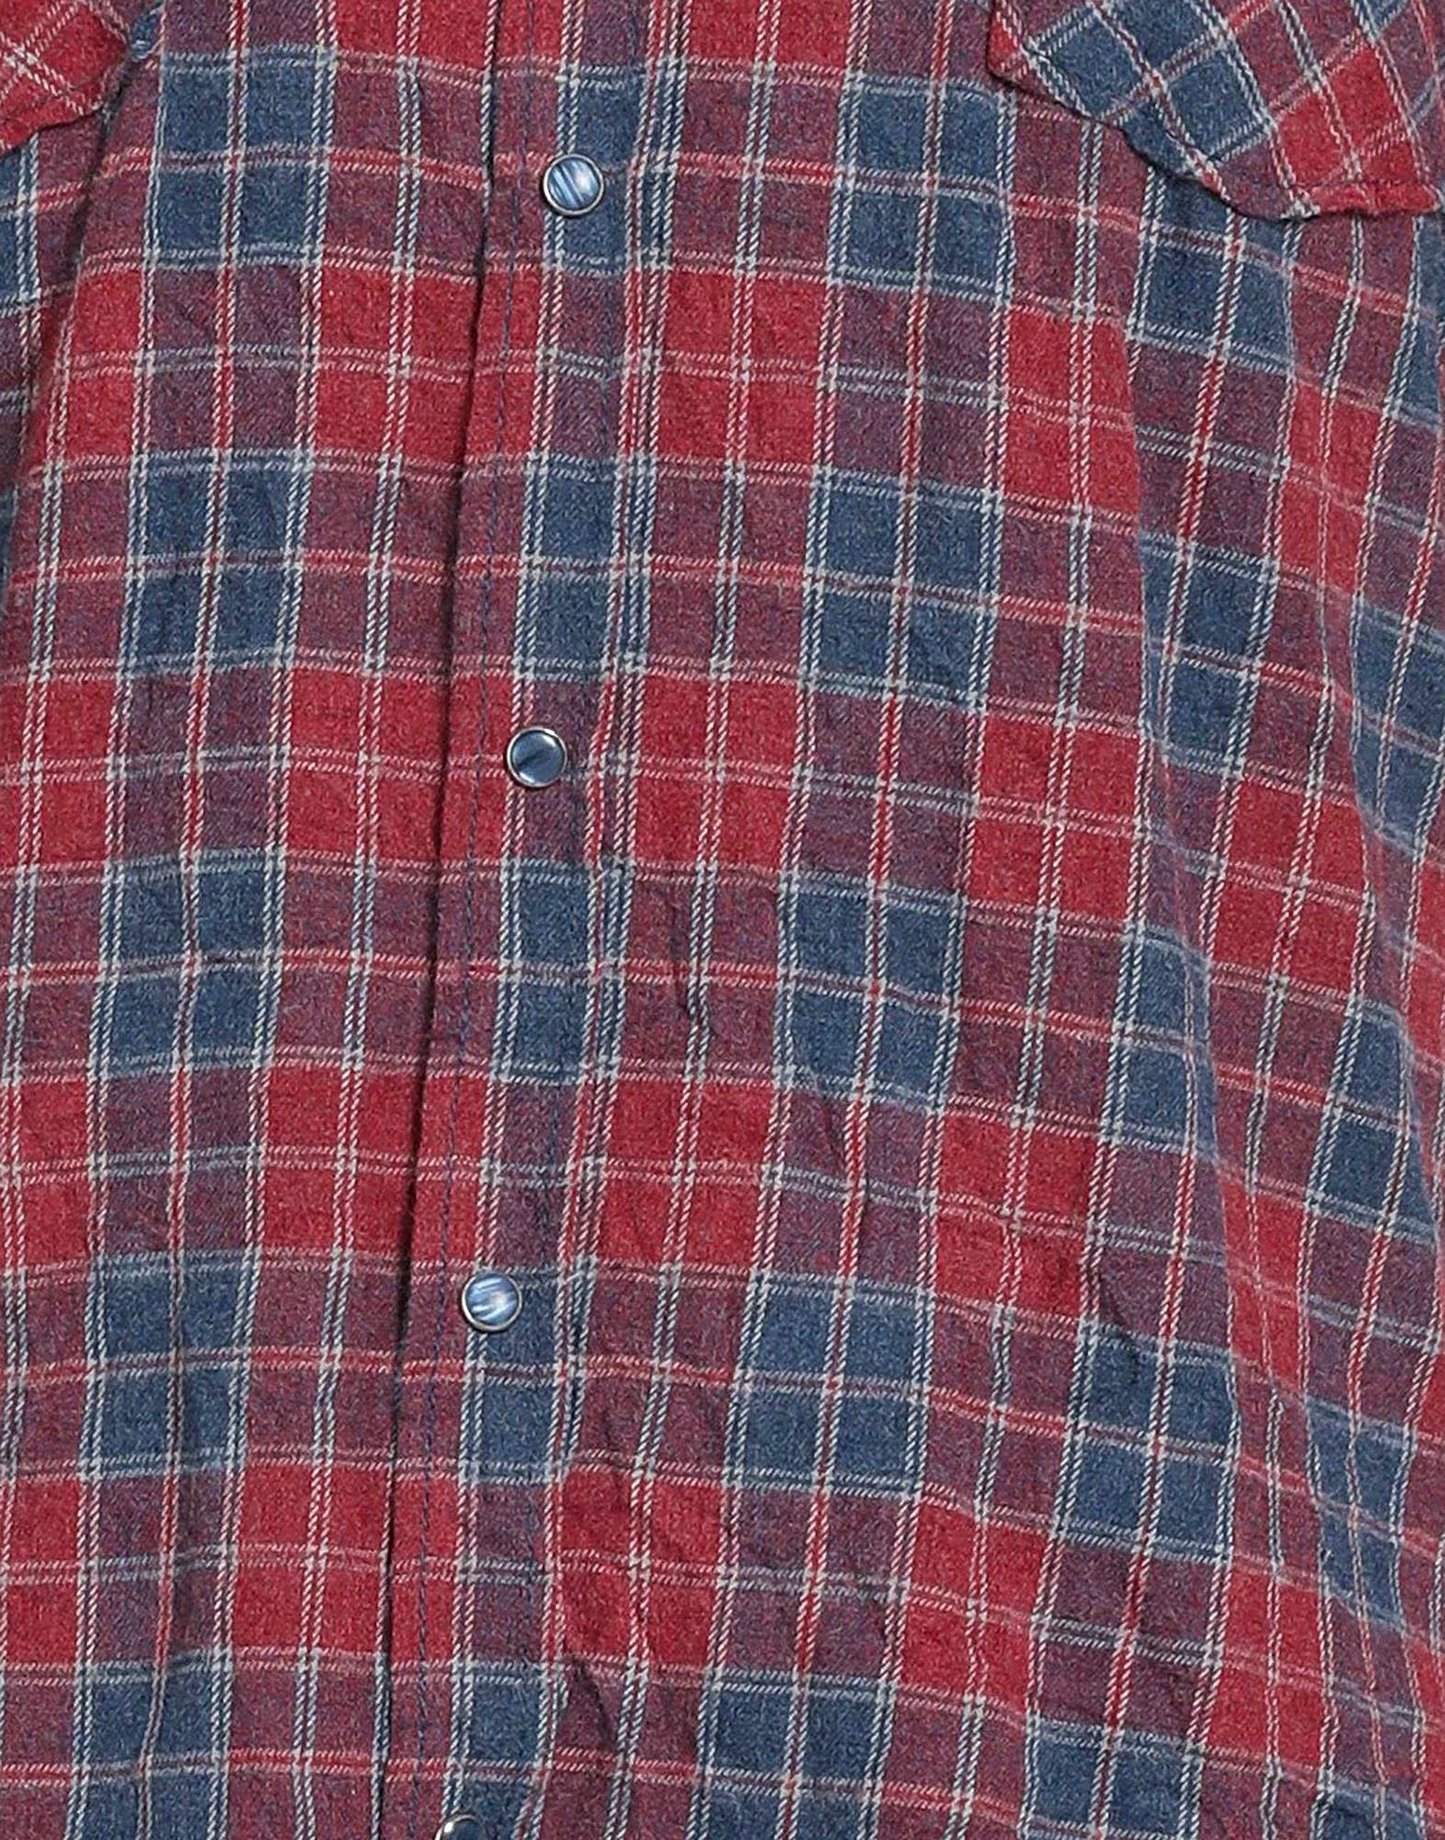 PARIOLI  MEN - Men's Shirts- Checked shirts